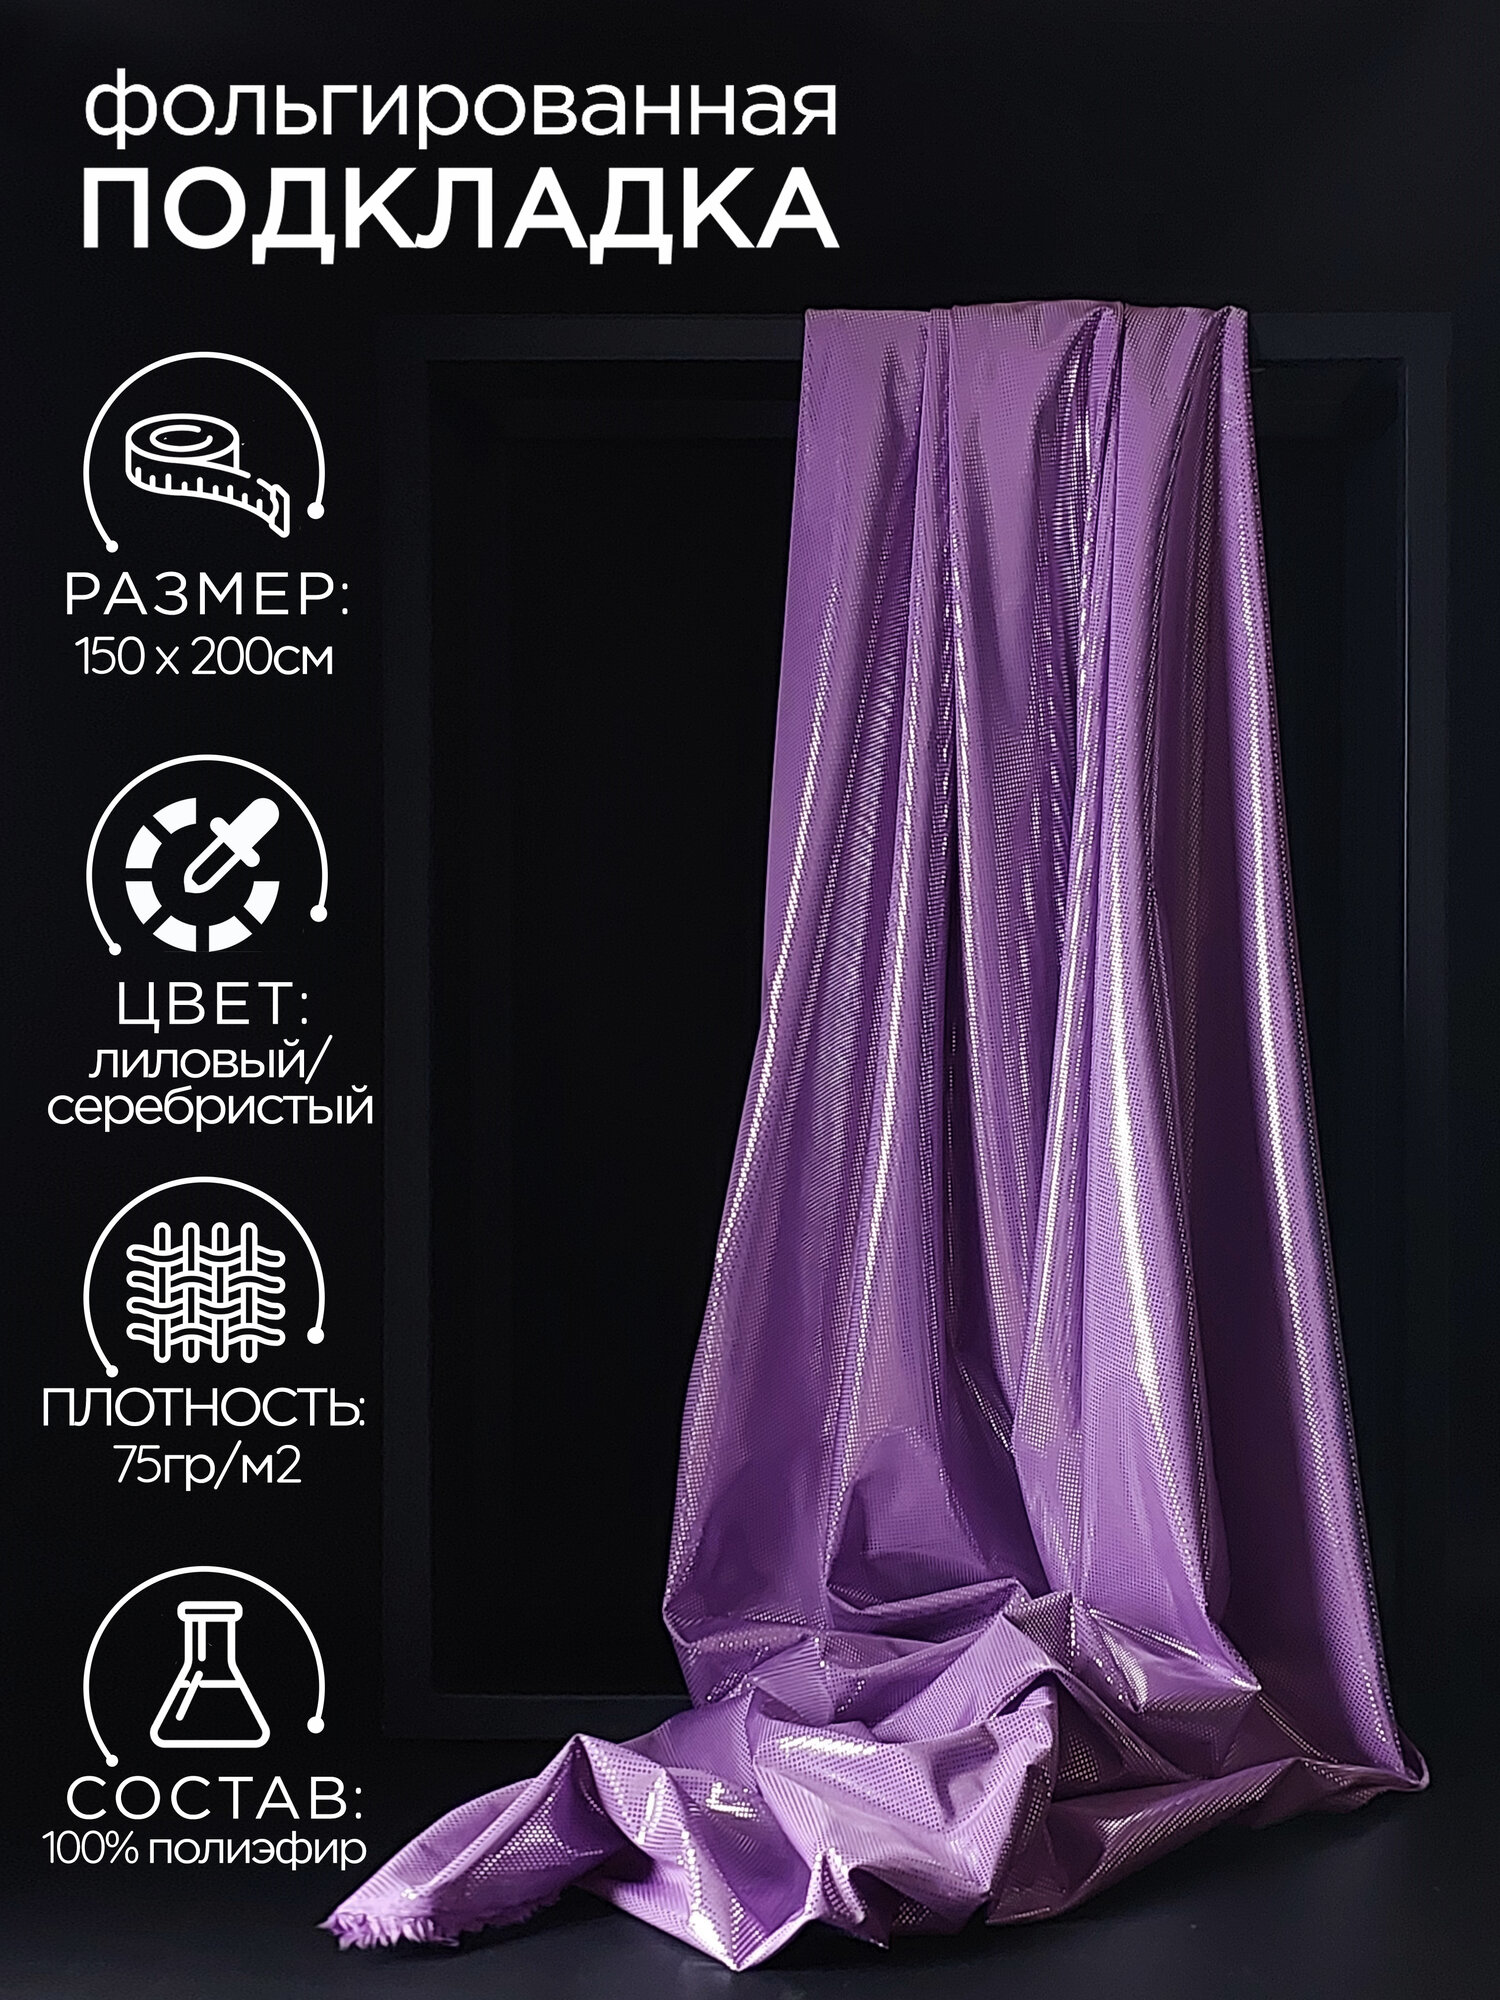 Подкладочная ткань фольгированная 2м (ширина 150см) цвет баклажан.